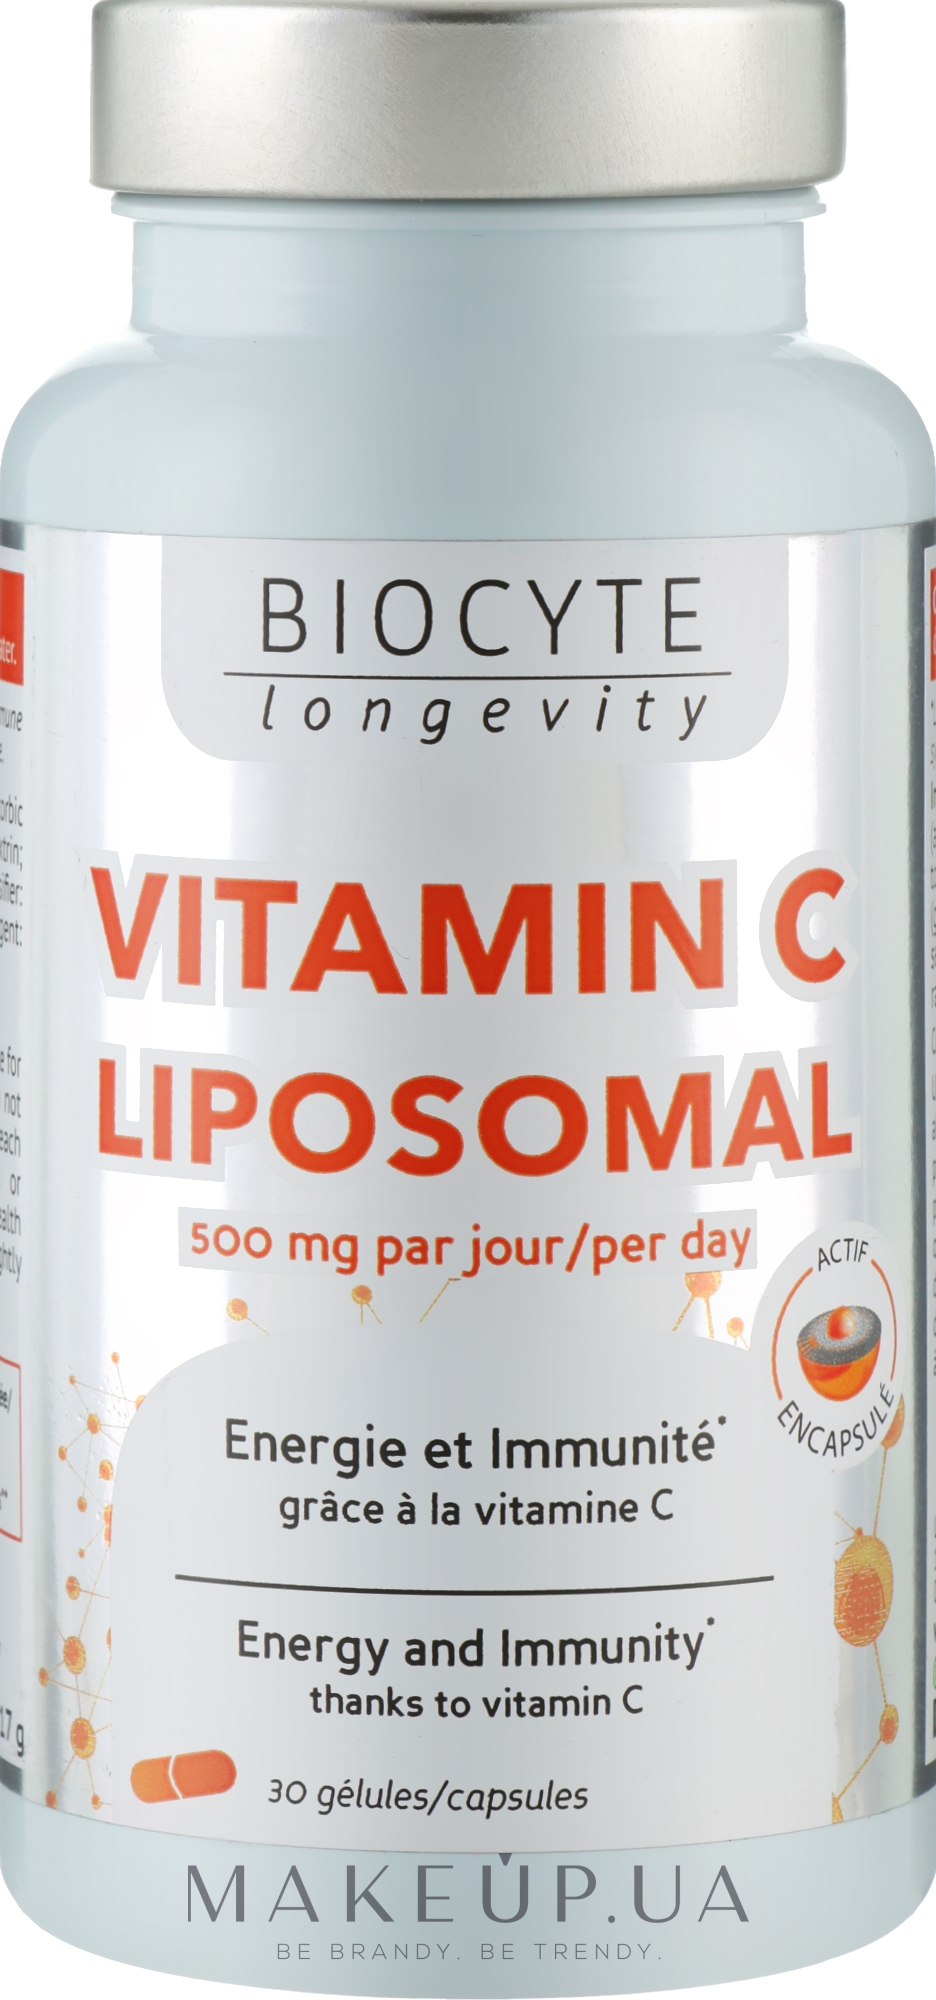 Biocytе Ліпосомальний вітамін C: Підтримка імунної системи  та зменшення втоми - Biocyte Longevity Vitamine C Liposomee 500mg — фото 30шт